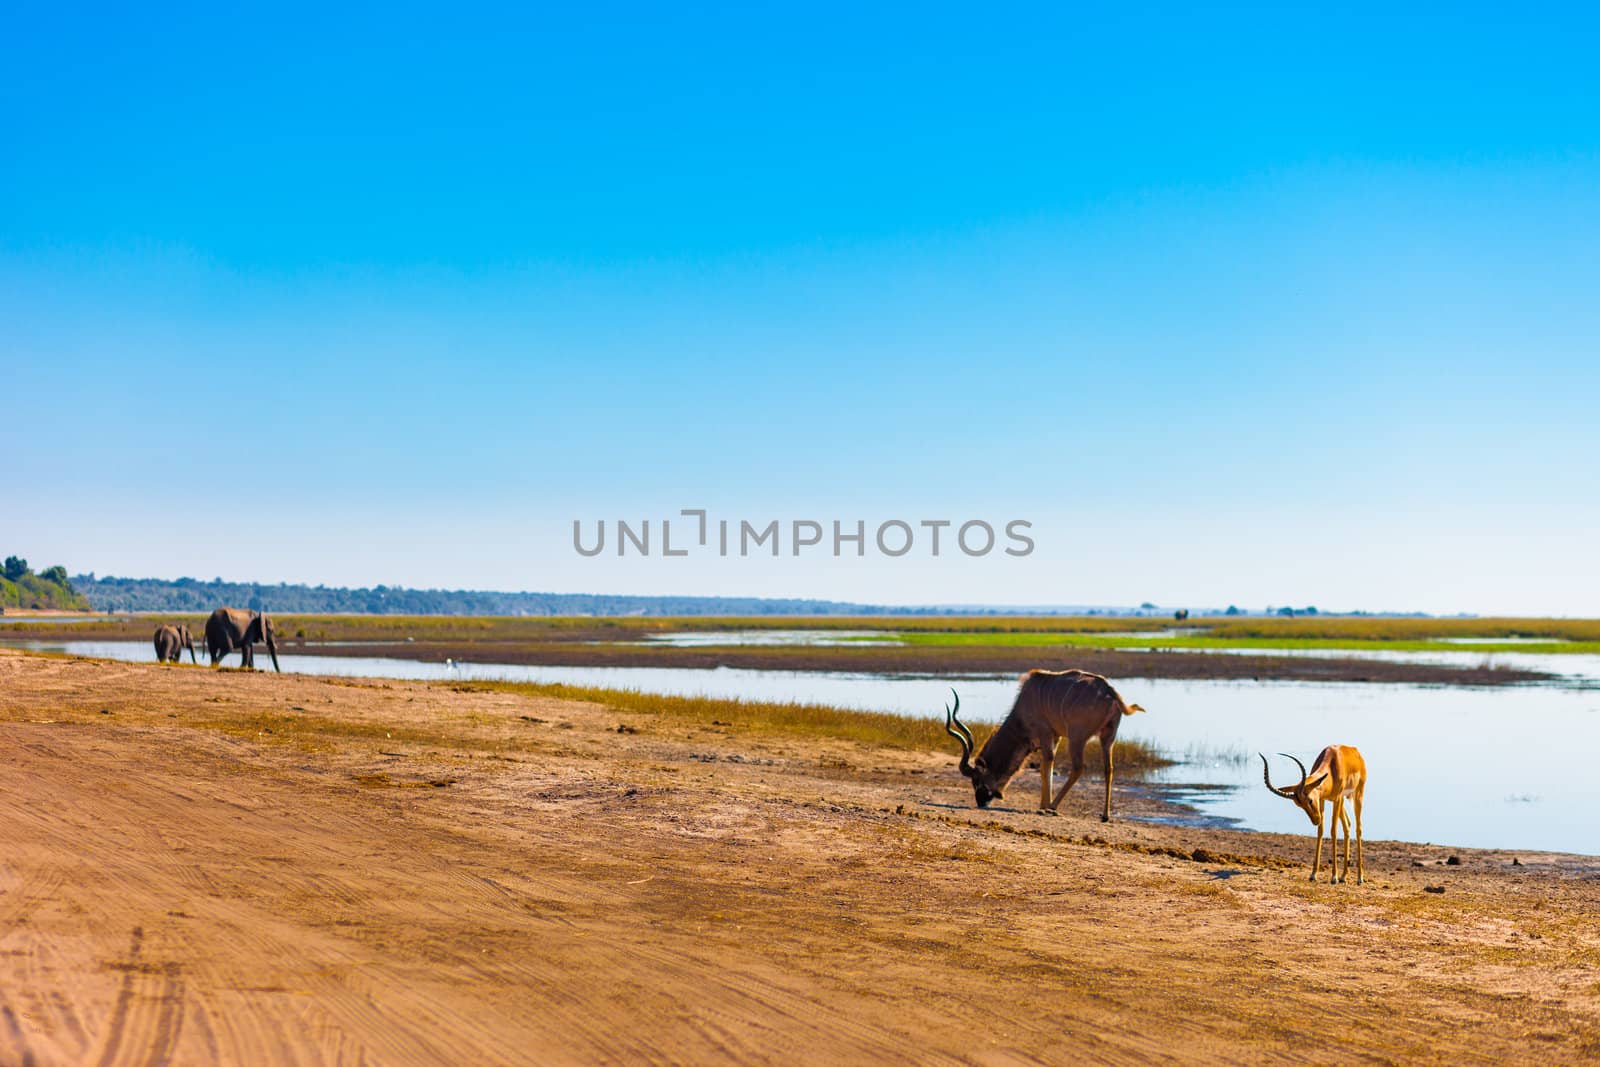 Impala, Kudu, Elephants at river by edan